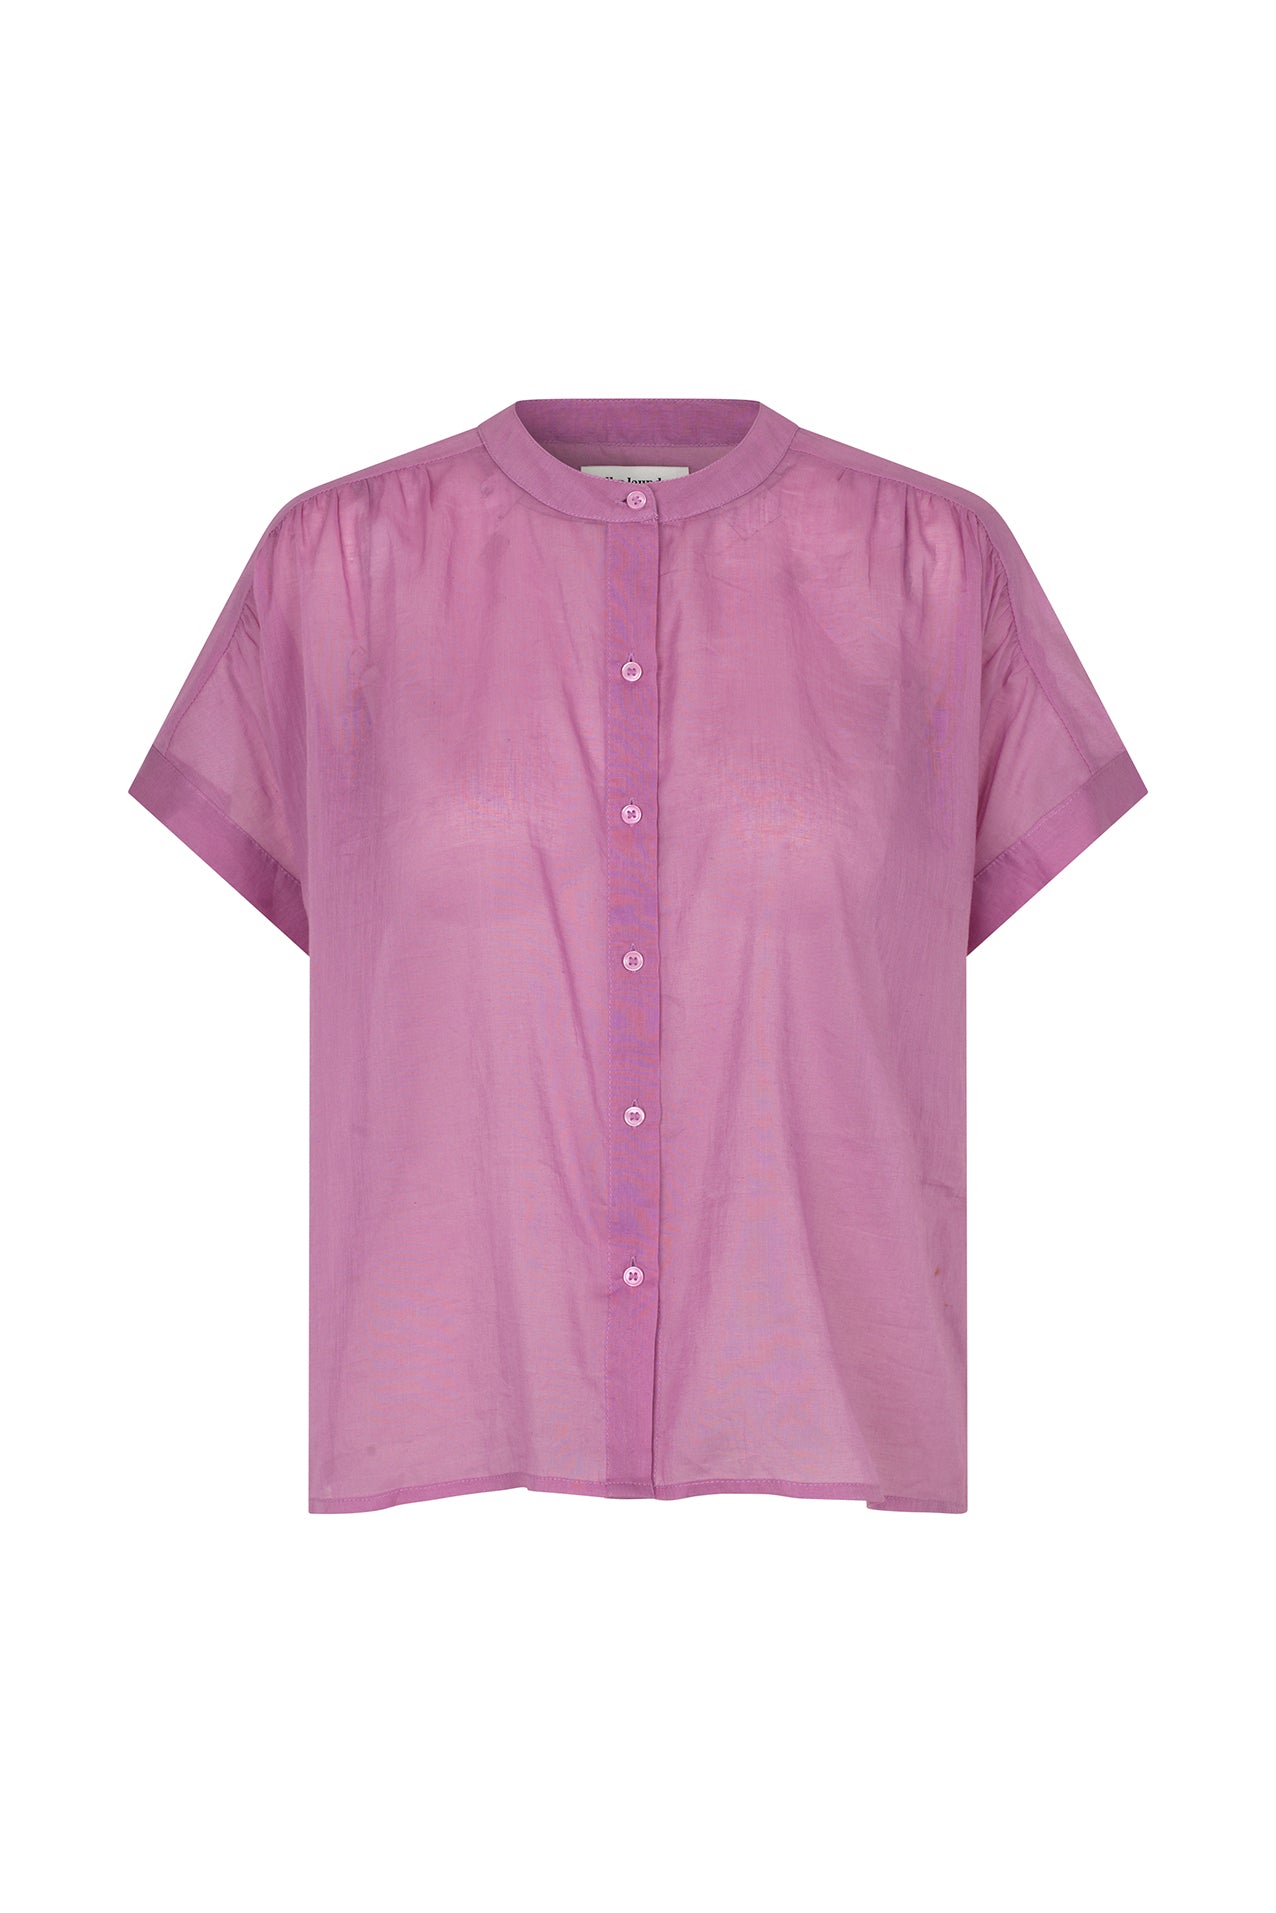 Lollys Laundry MyaLL Shirt SS Shirt 53 Lilac